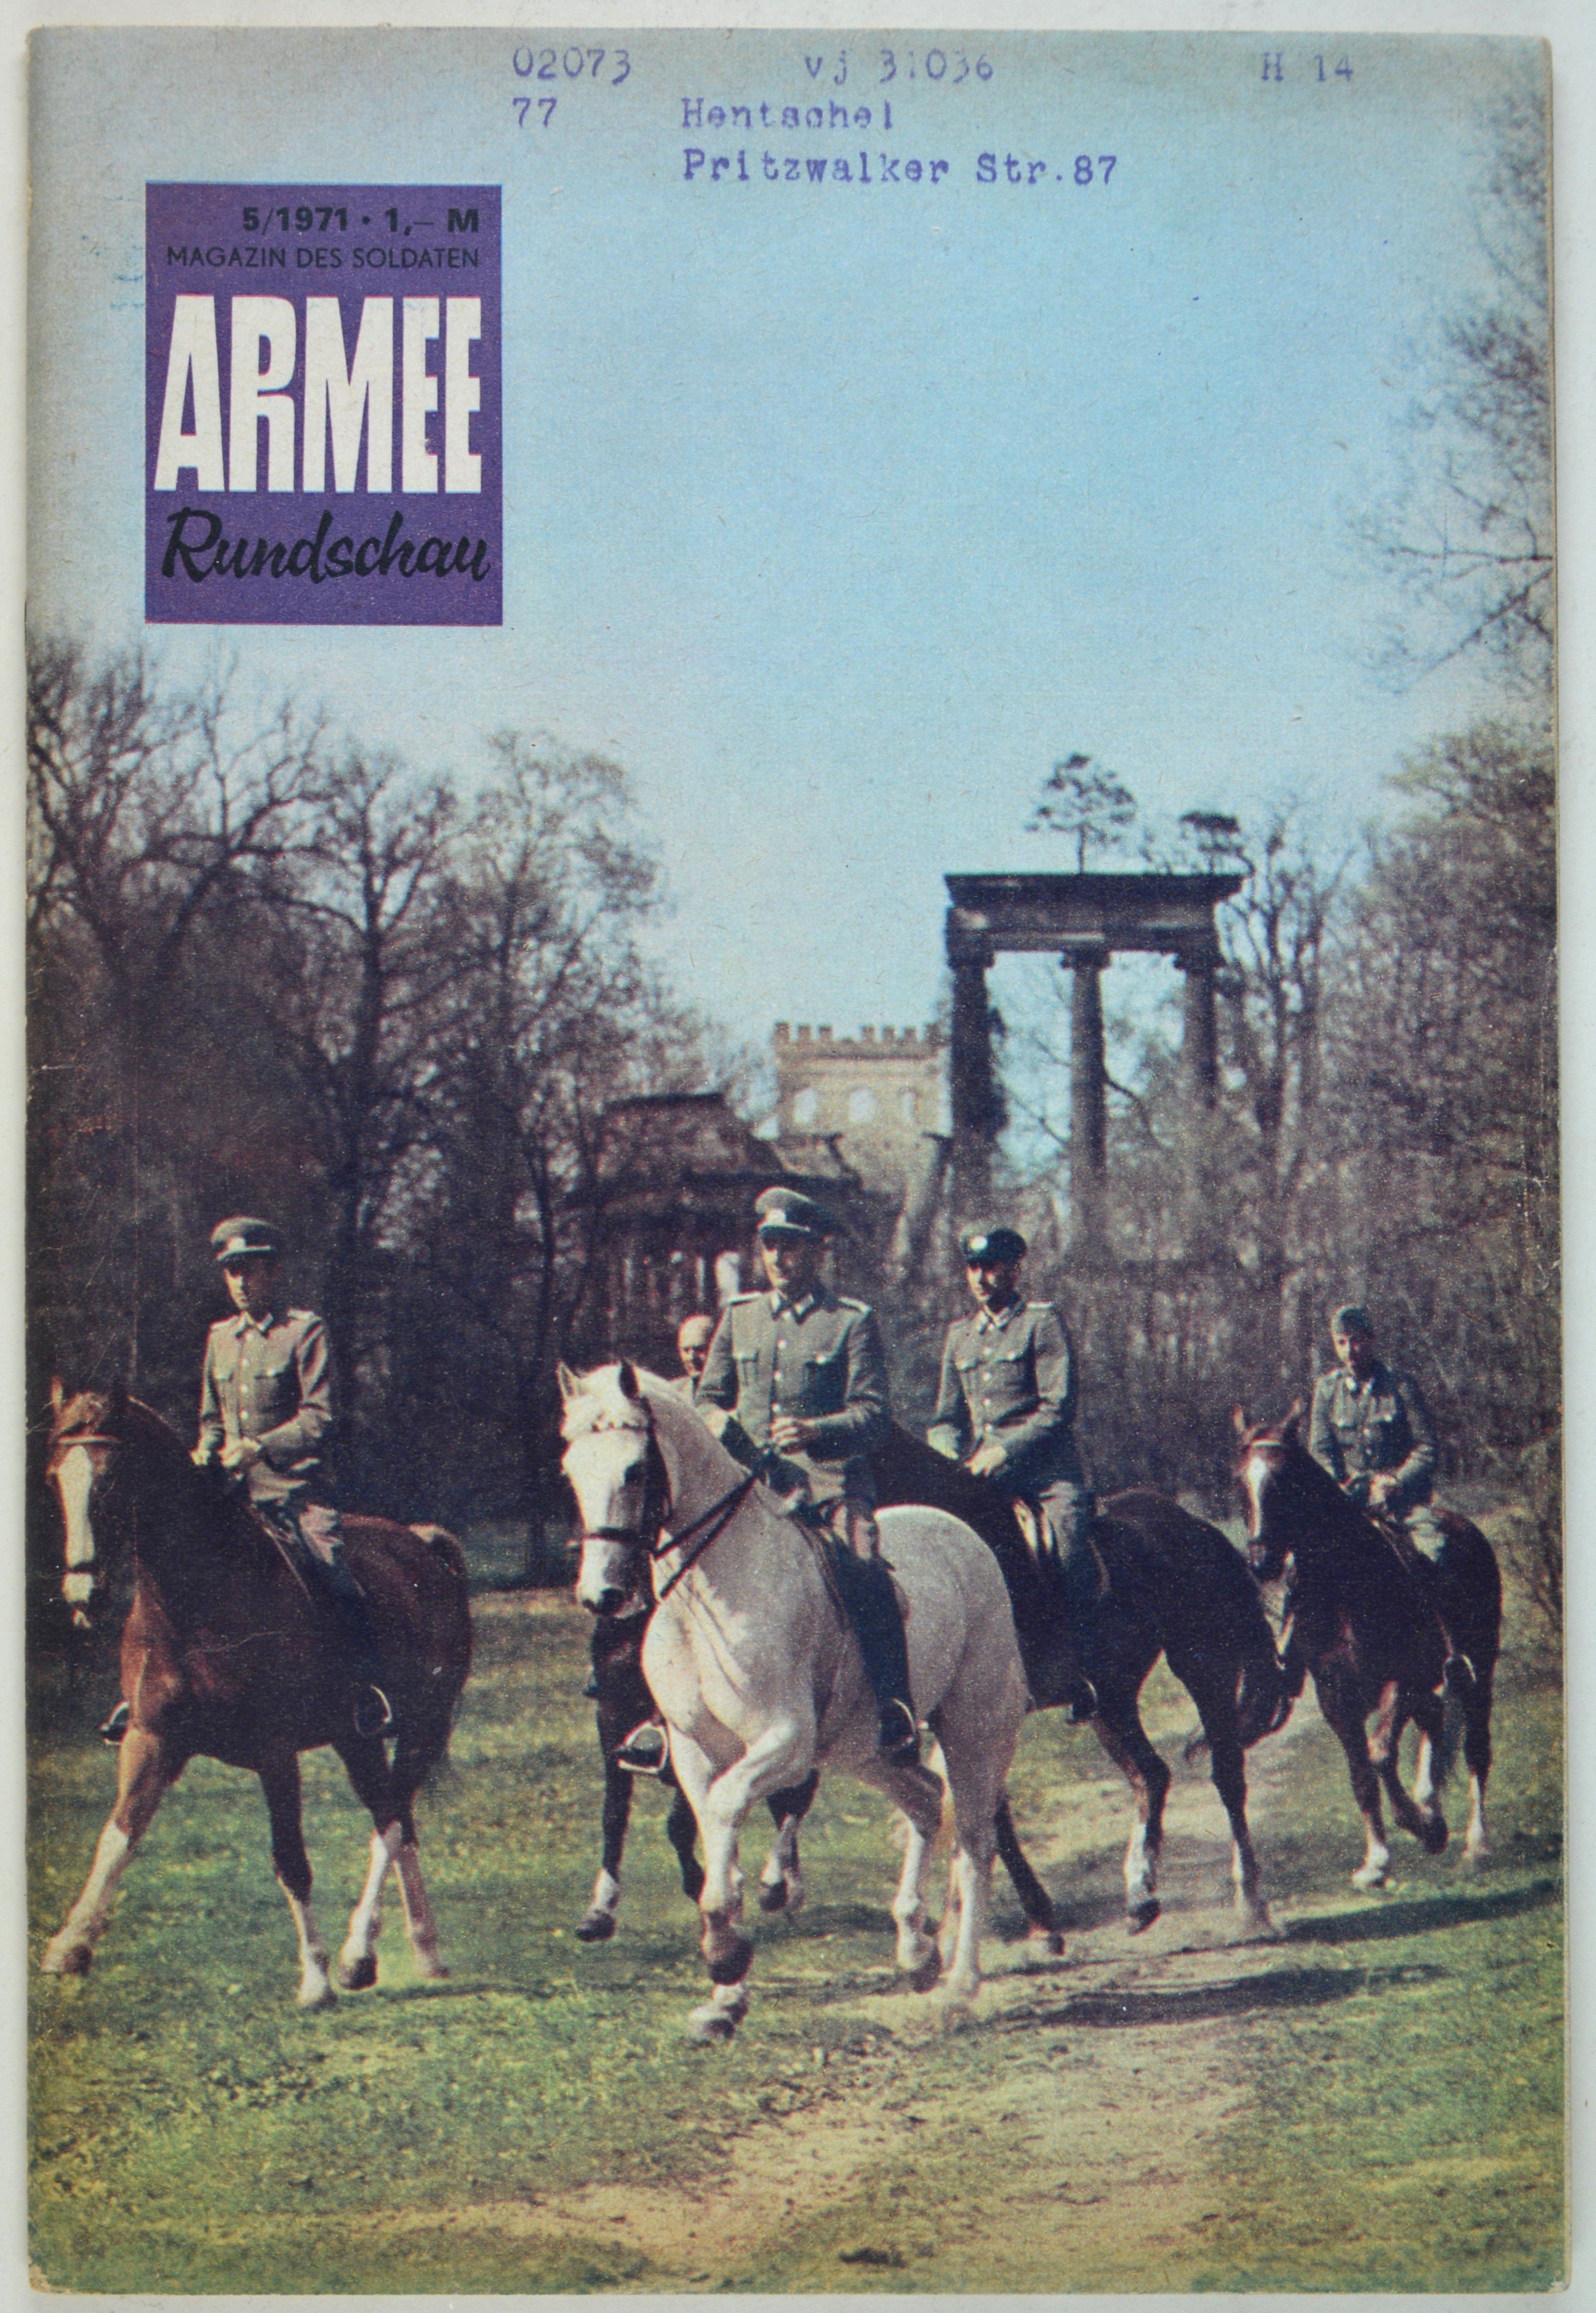 Armeerundschau - Magazin des Soldaten (1971), Heft 5 (DDR Geschichtsmuseum im Dokumentationszentrum Perleberg CC BY-SA)